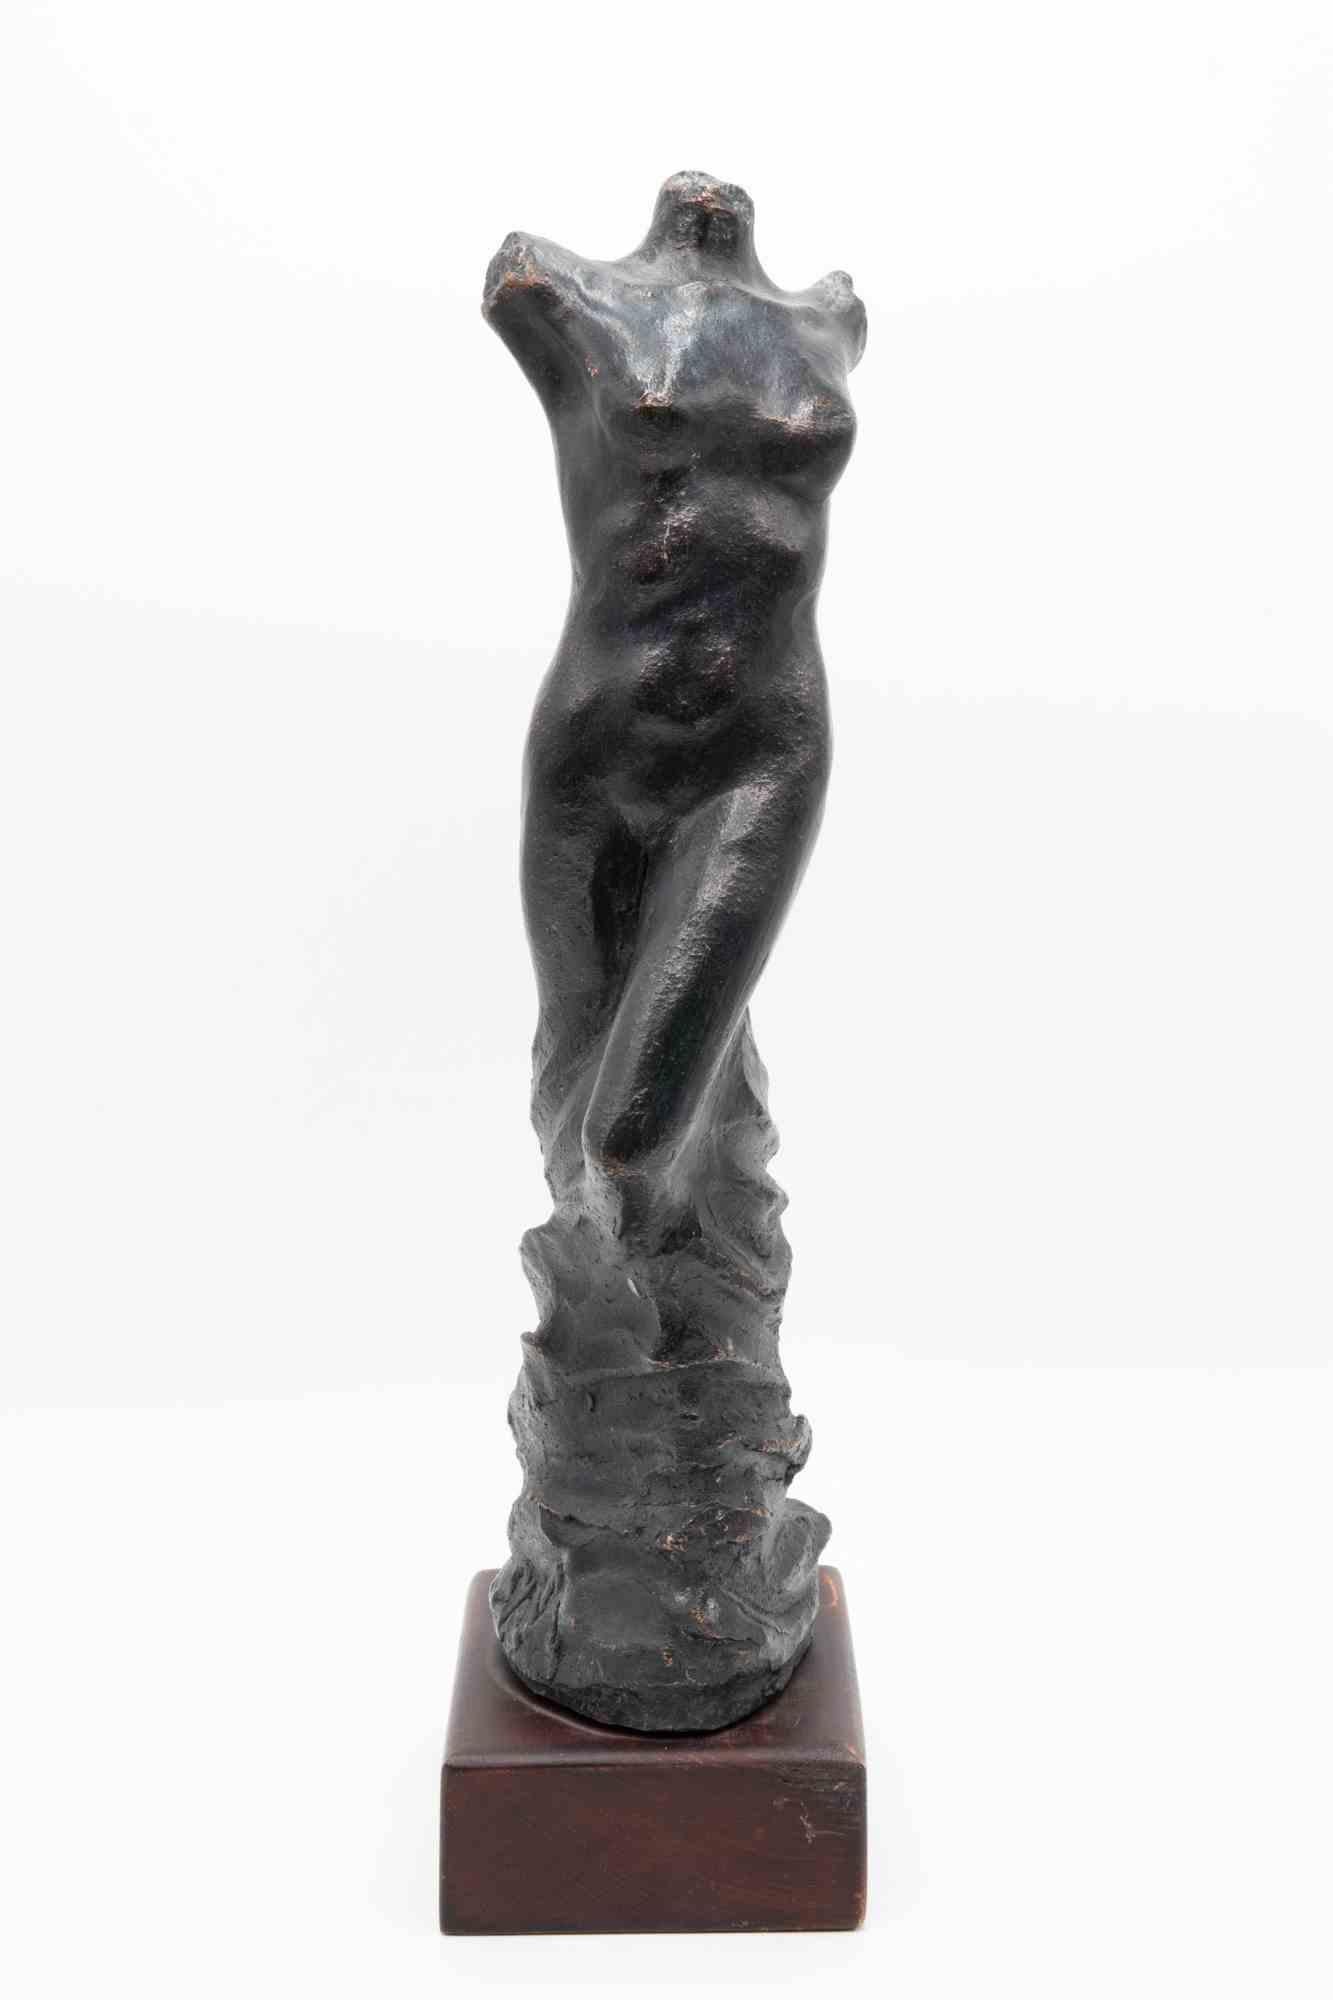 Die Statue einer Frau ist eine Bronzeskulptur von Fabrizio Savi aus dem Jahr 2012. 

Körper einer Frau ohne Gesicht, die in eine leichte Drehung verwickelt ist. Die Beine nehmen die Form des am Sockel skizzierten Bronzematerials an. 

Kunstwerk für